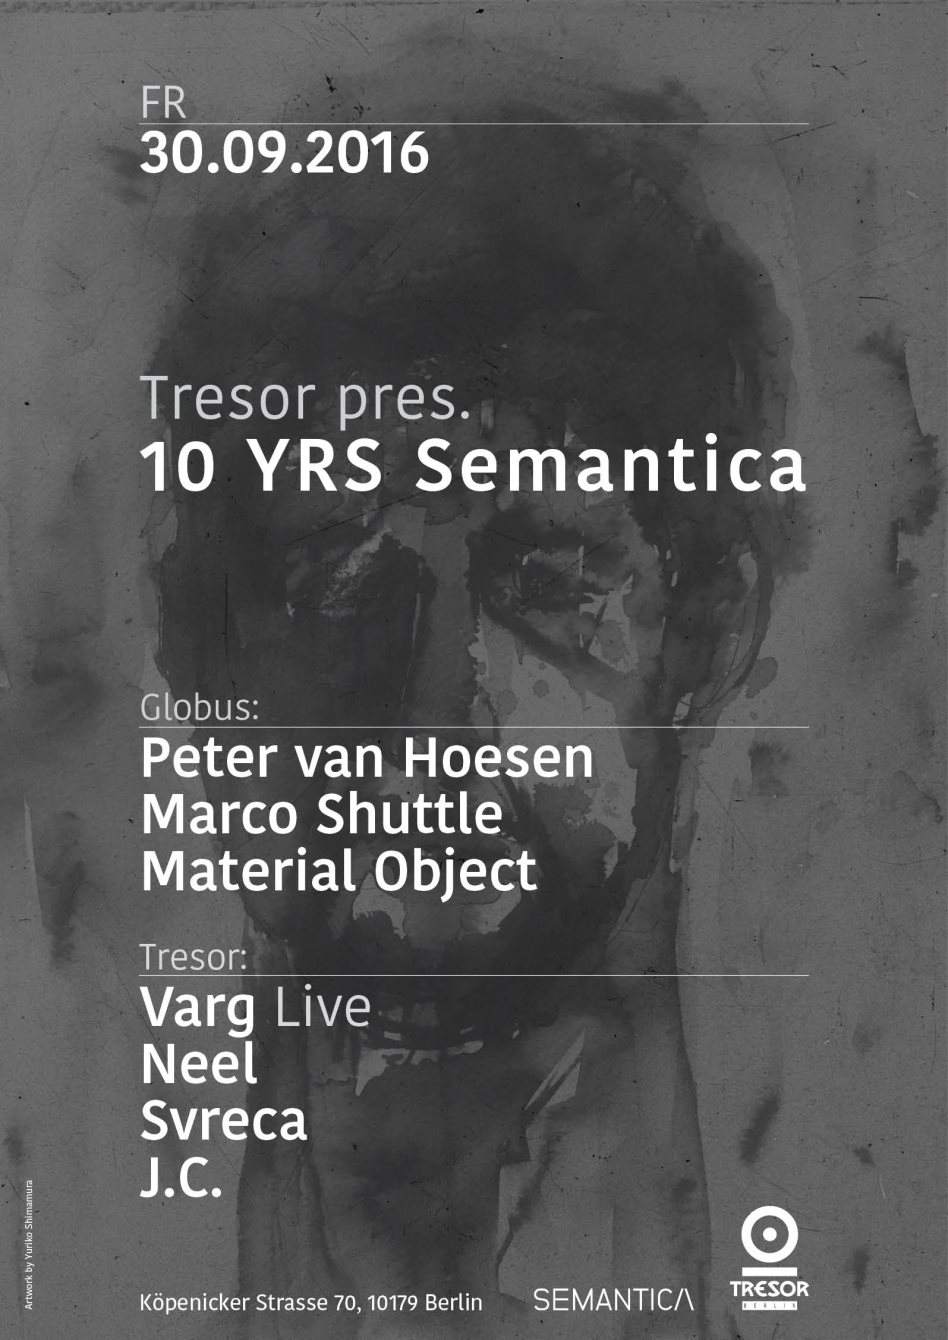 Tresor Pres. 10 YRS Semantica - フライヤー表